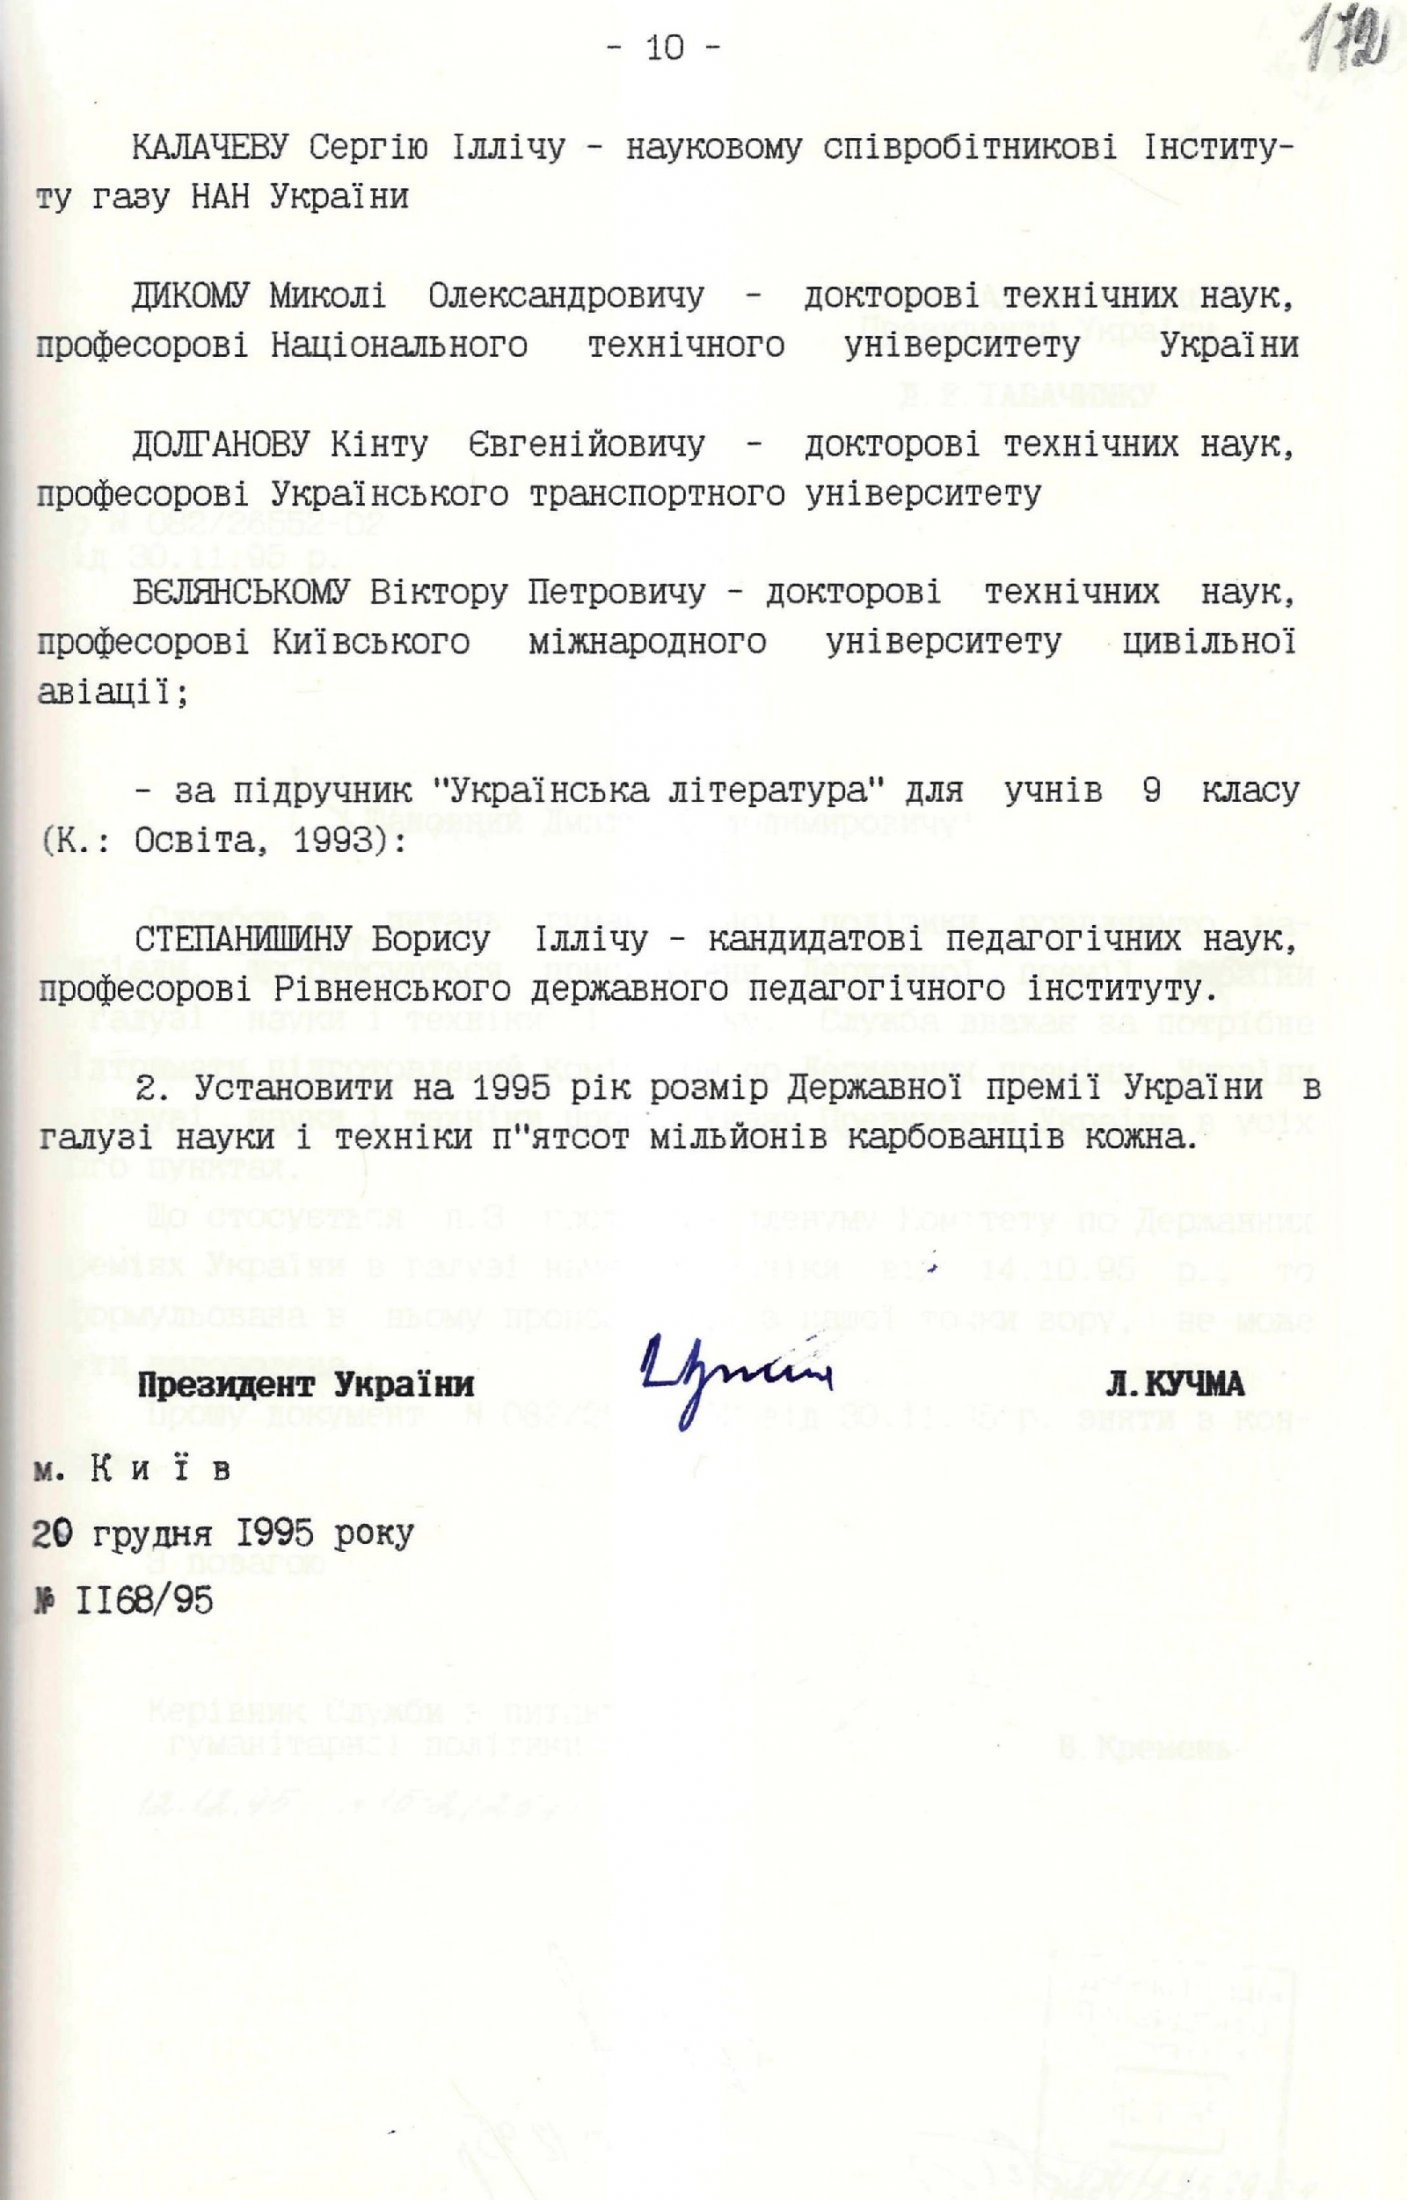 З Указу Президента України від 20 грудня 1995 р. № 1168/95 «Про присудження Державних премій України в галузі науки і техніки 1995 року».